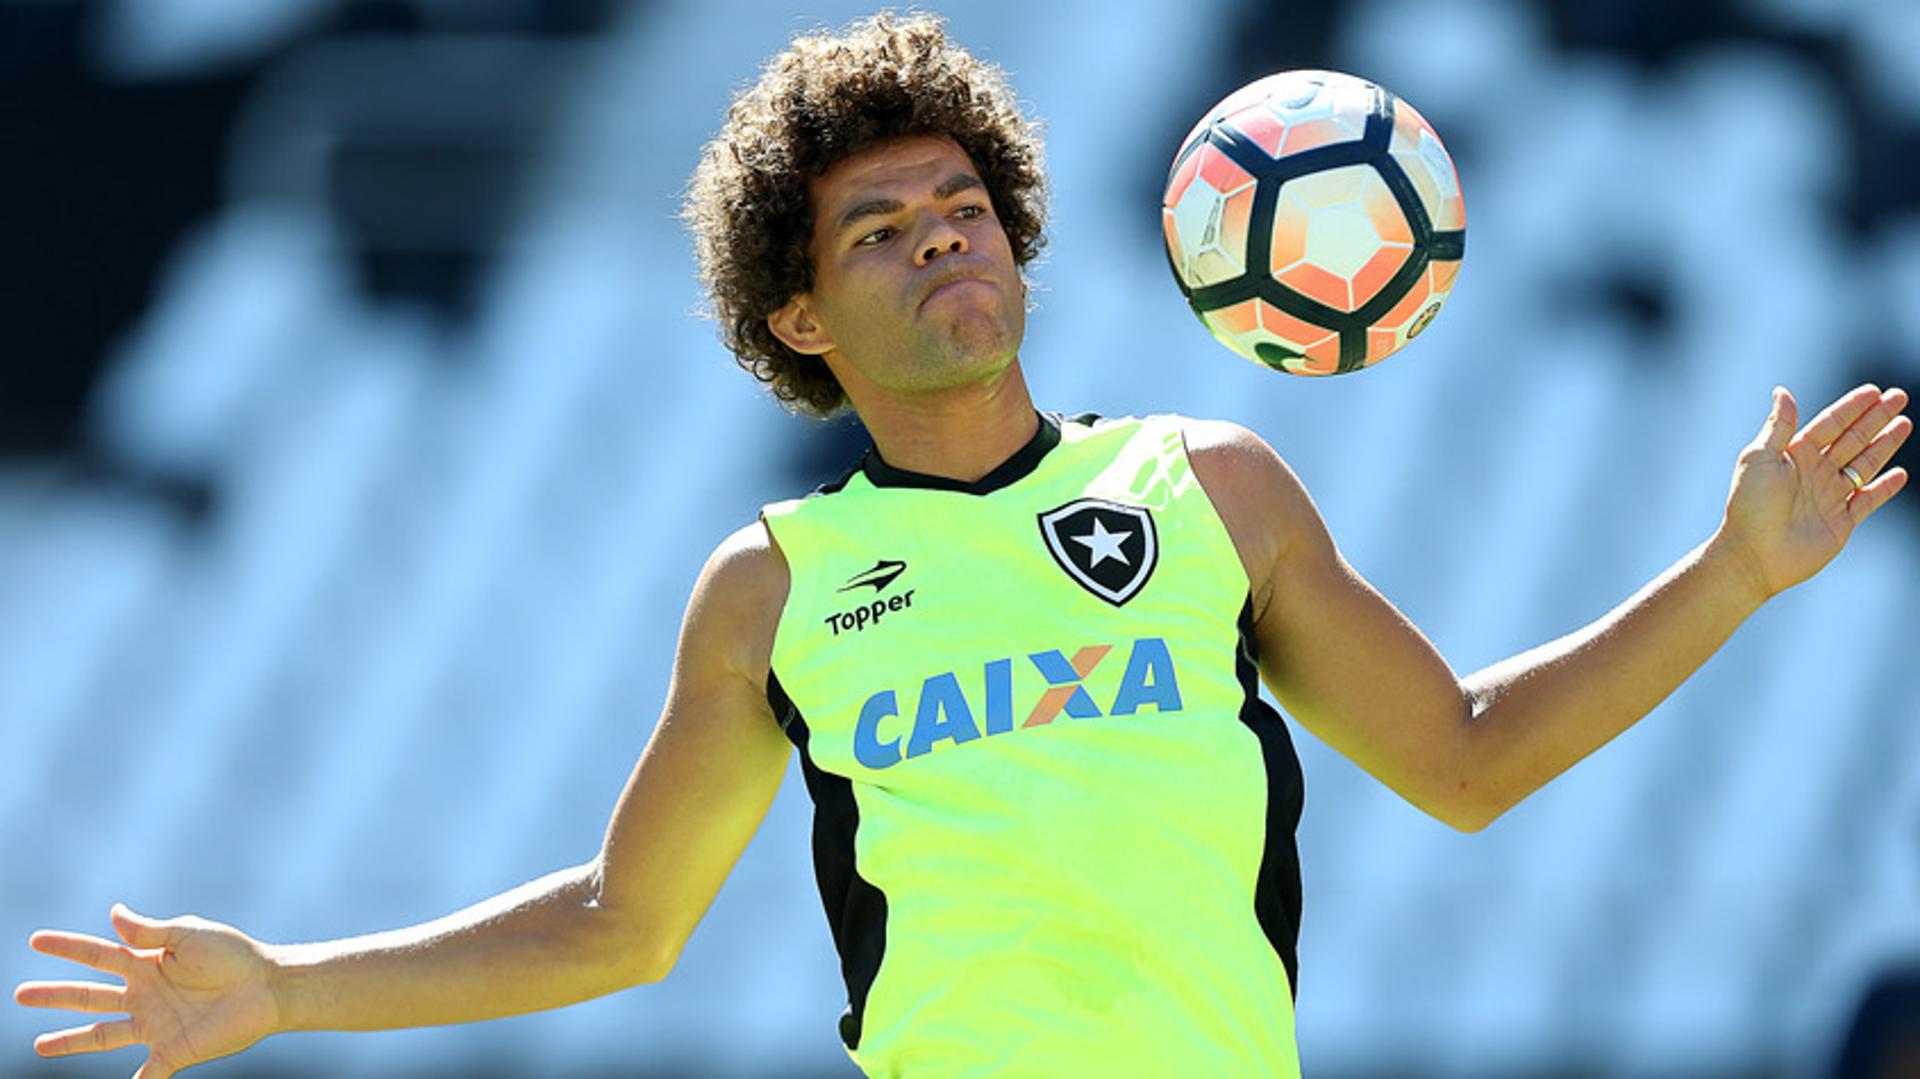 Camilo - Treino do Botafogo